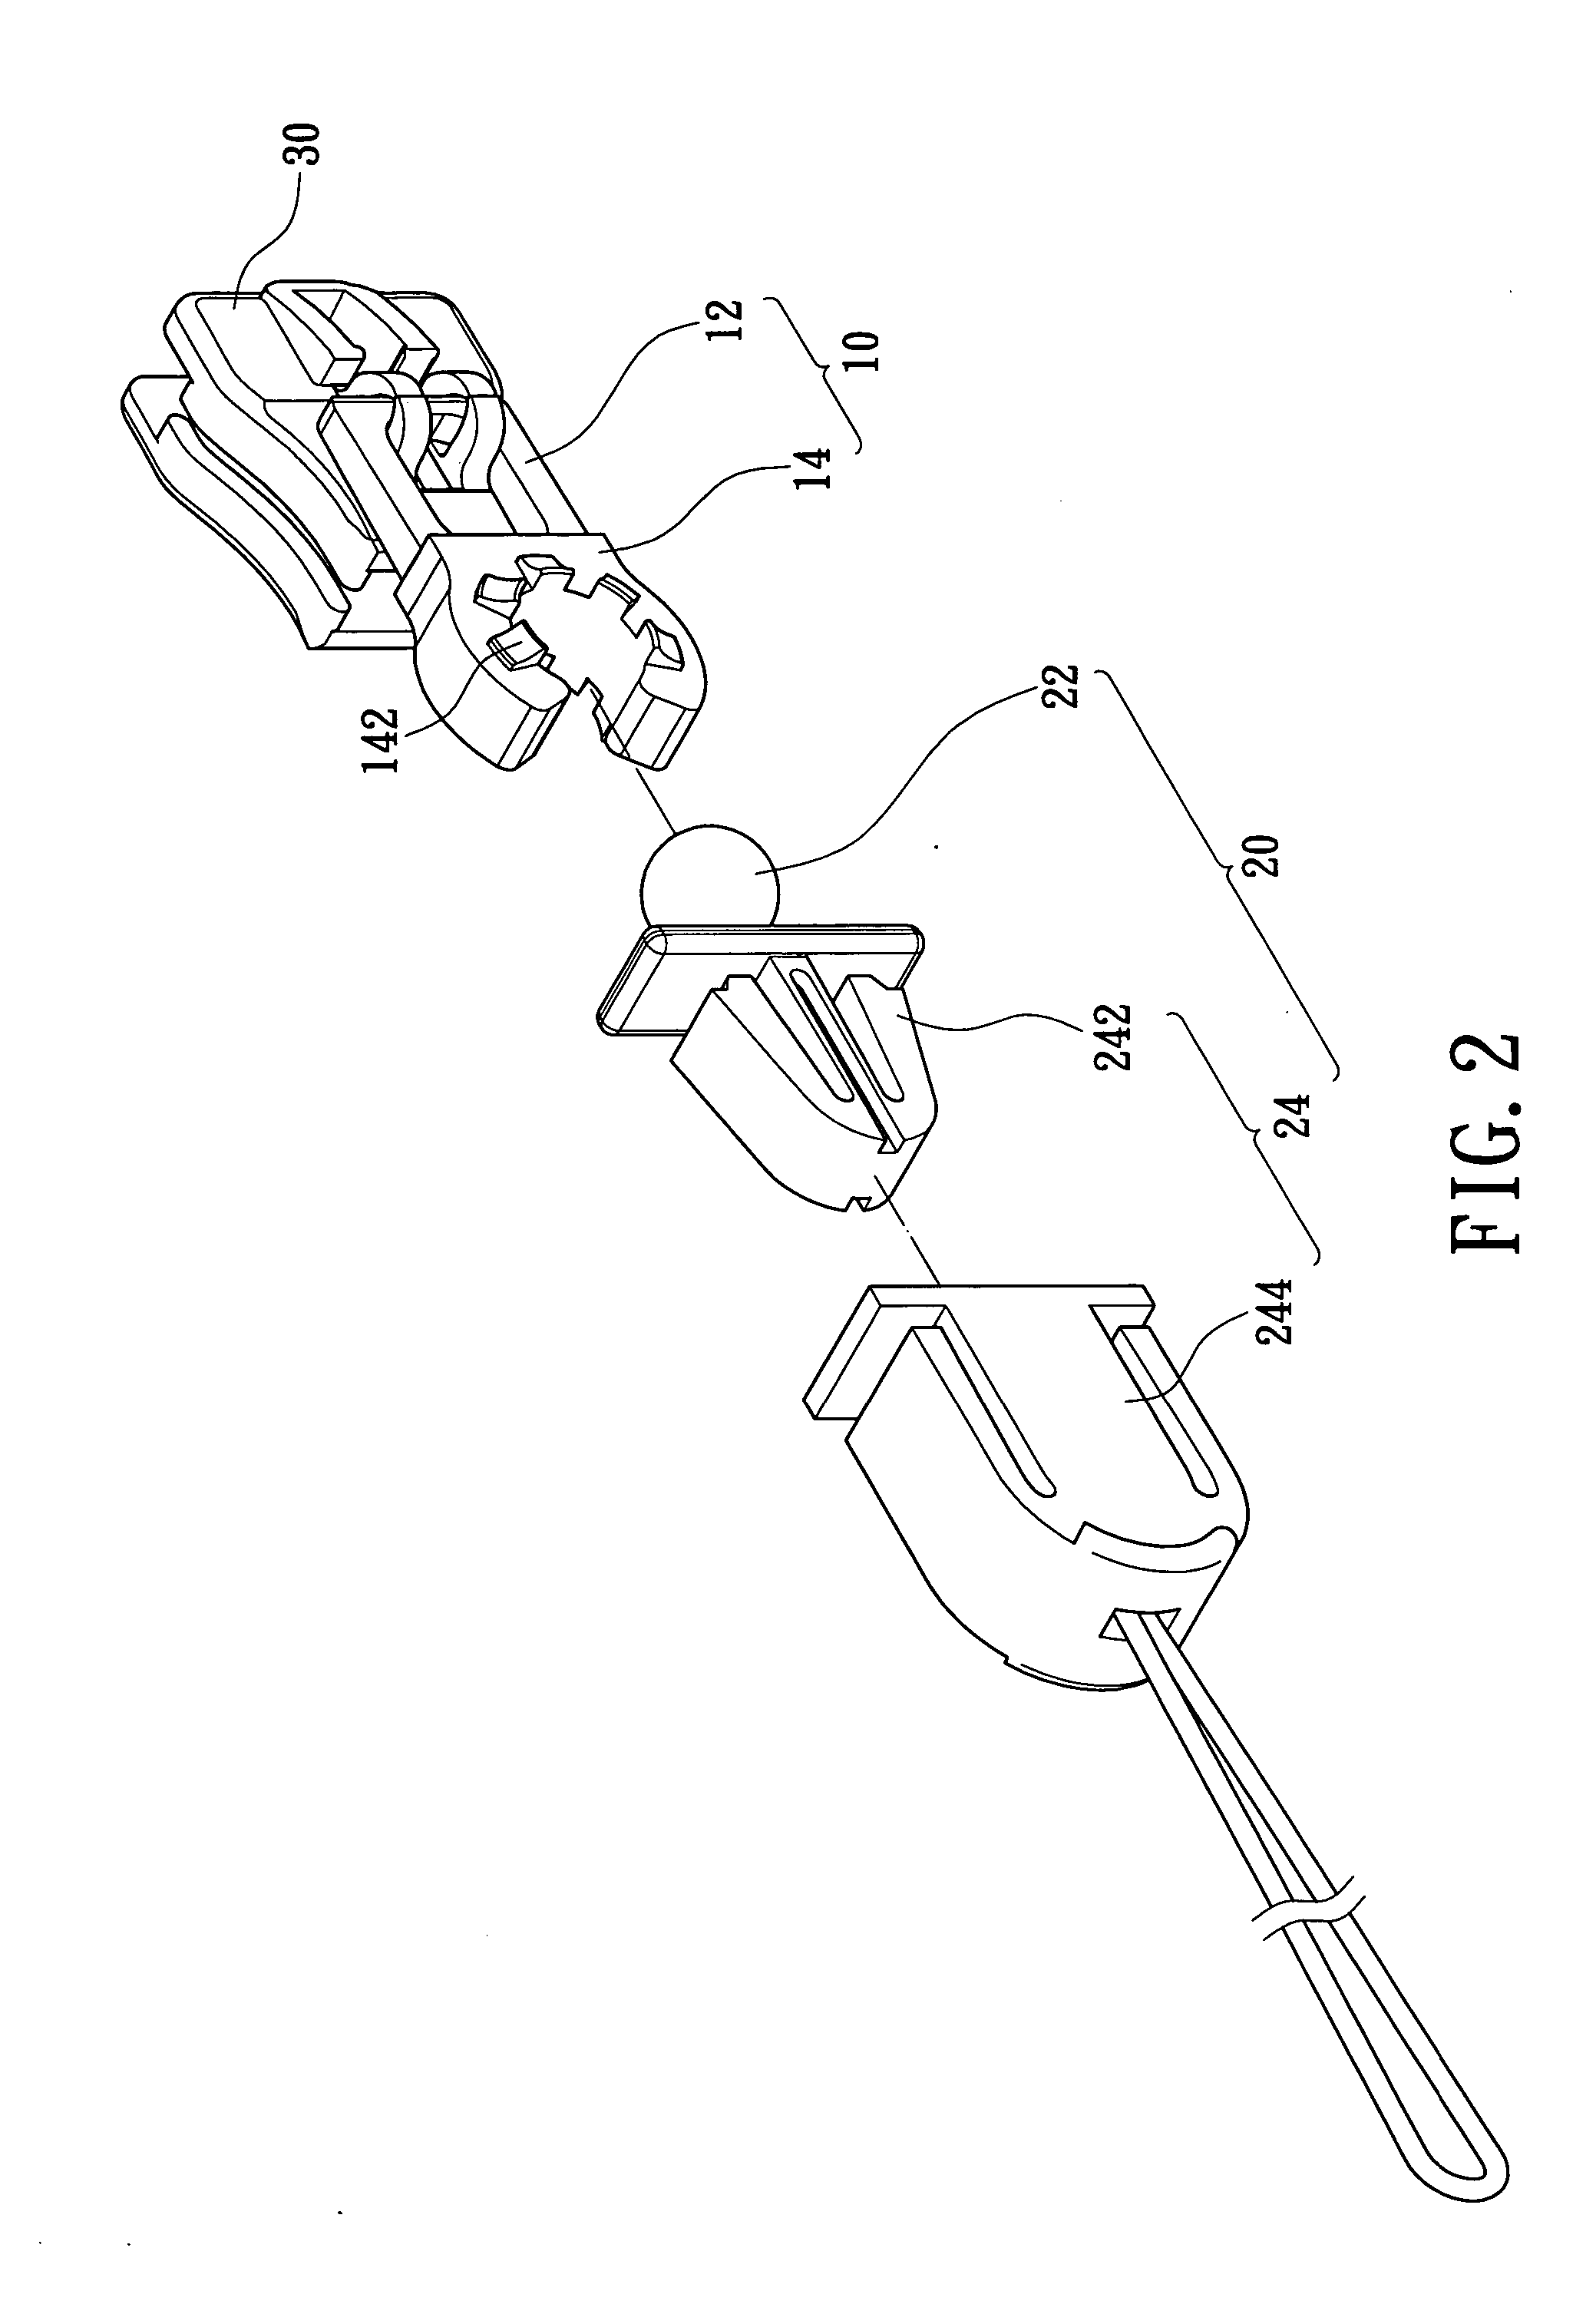 Tab mechanism